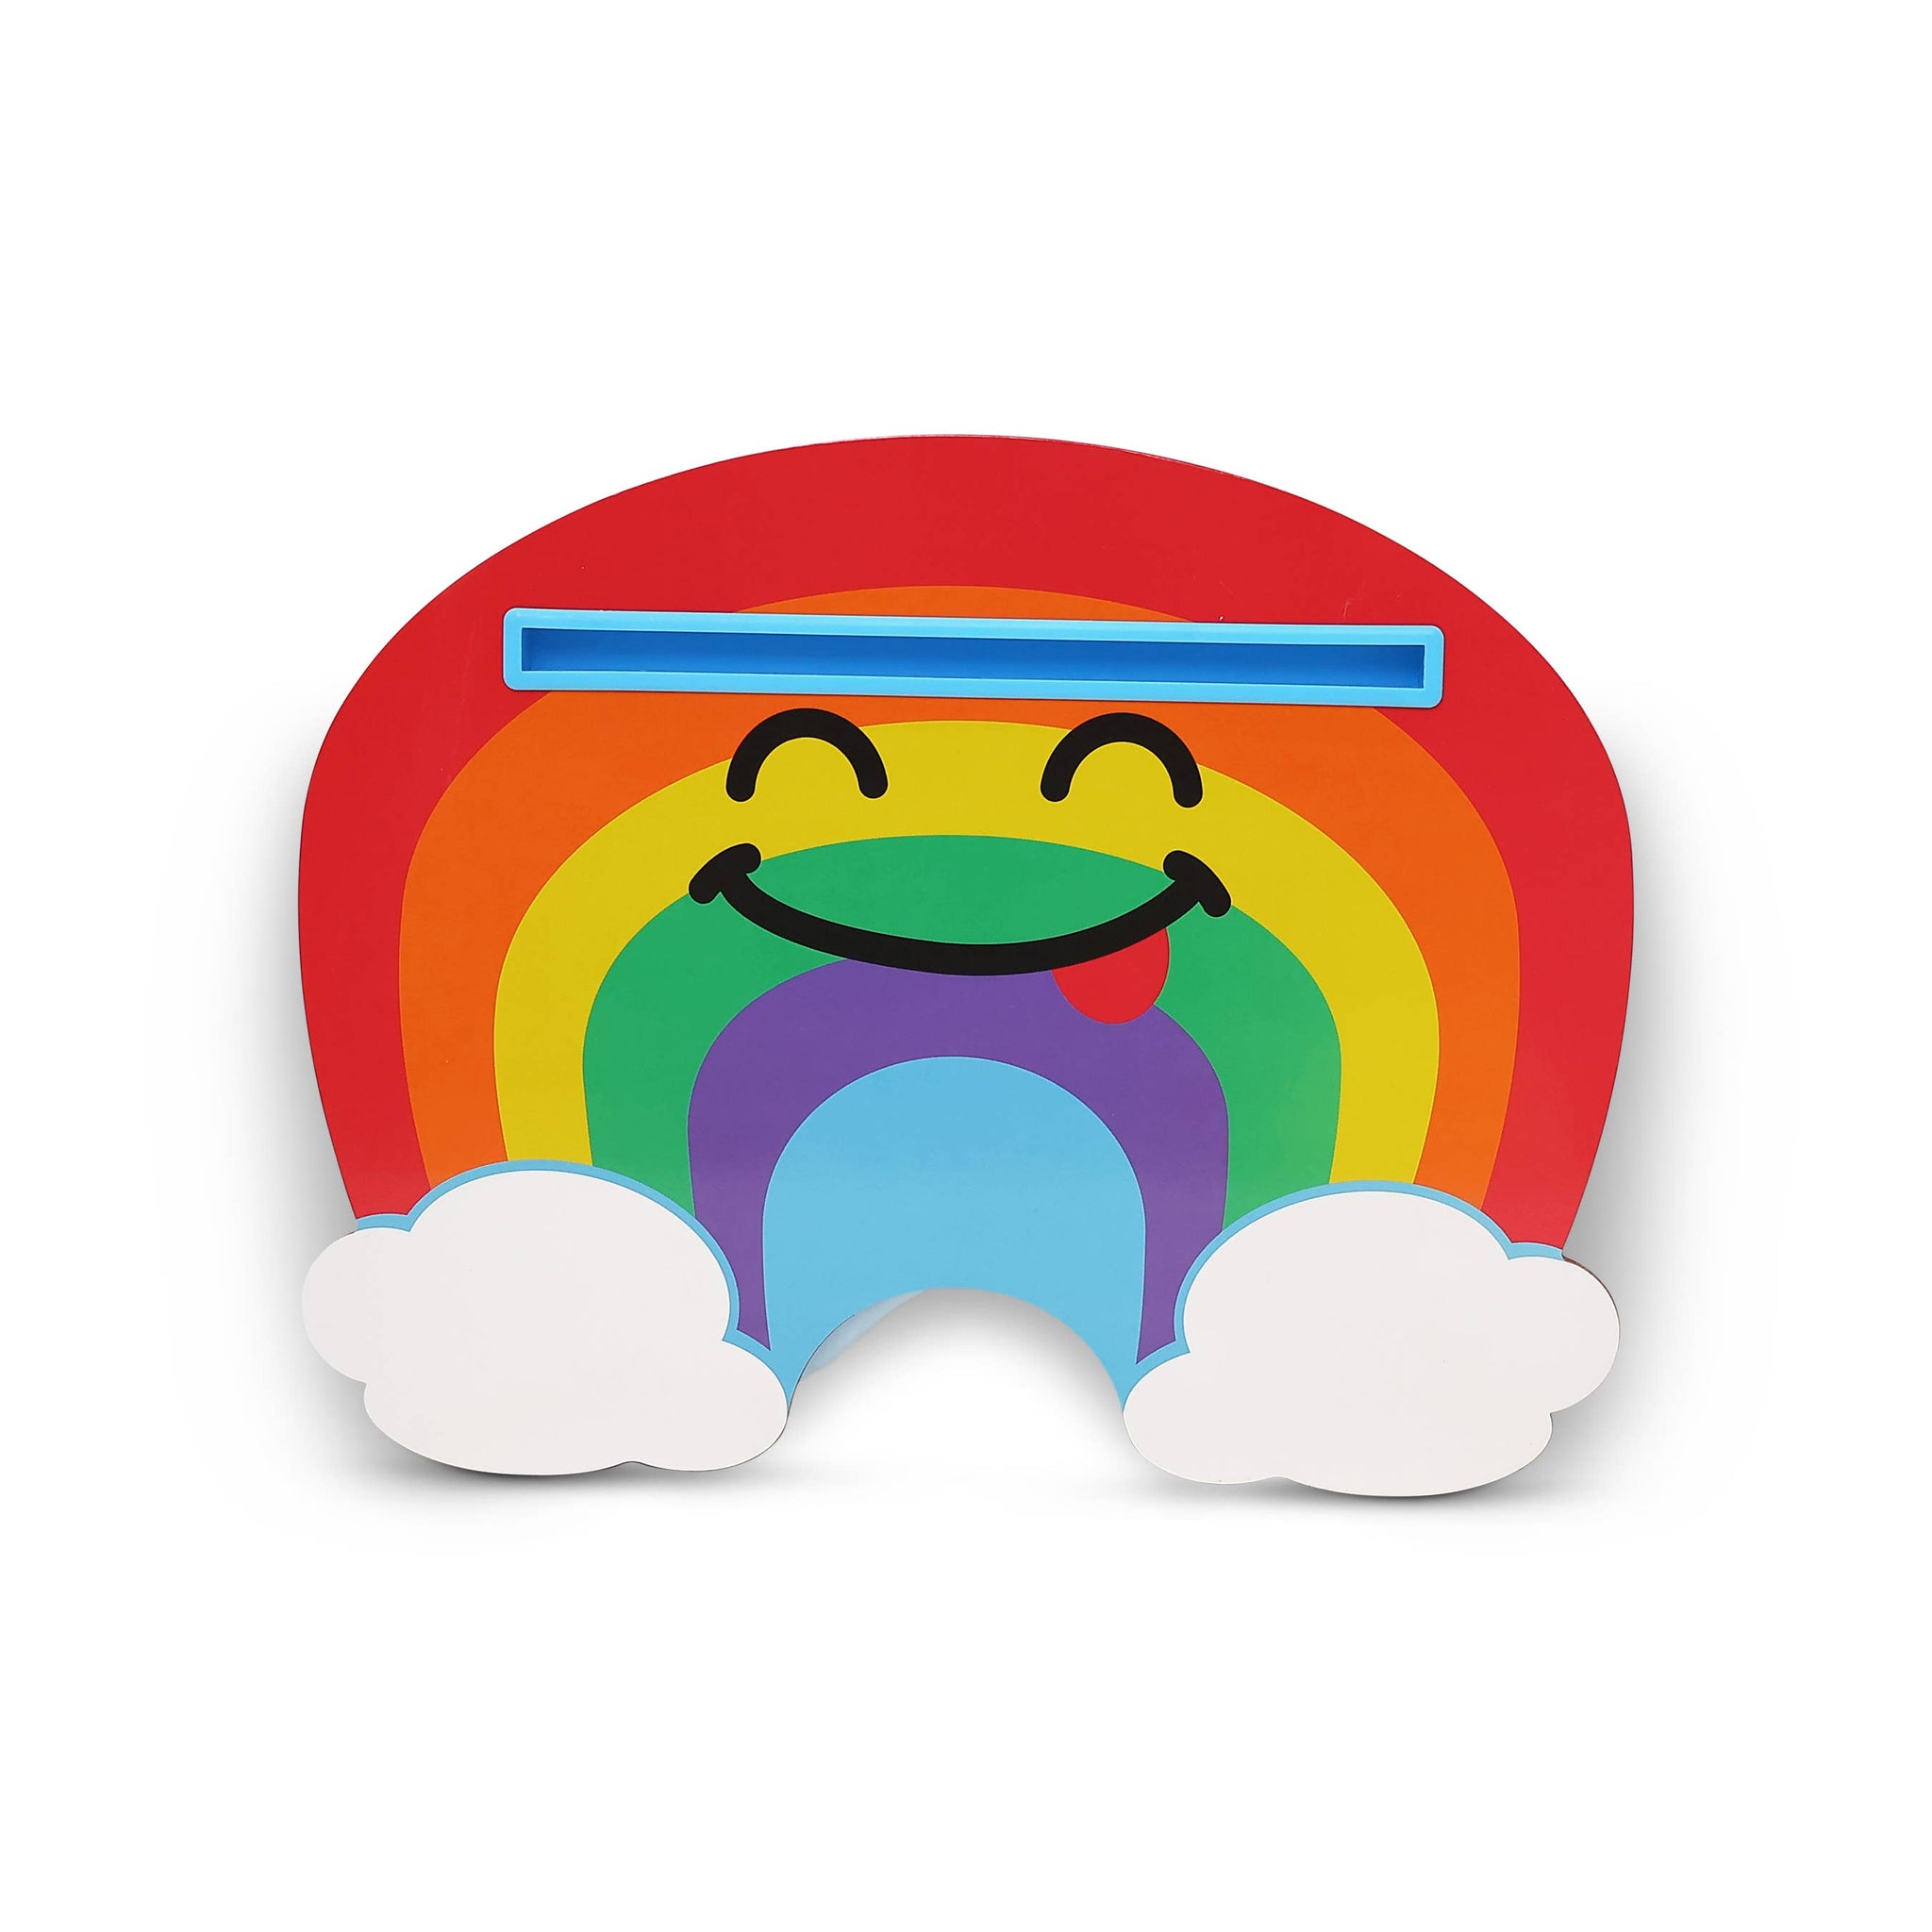 *Rainbow Lap Desk - built-in tablet holder, deluxe plush